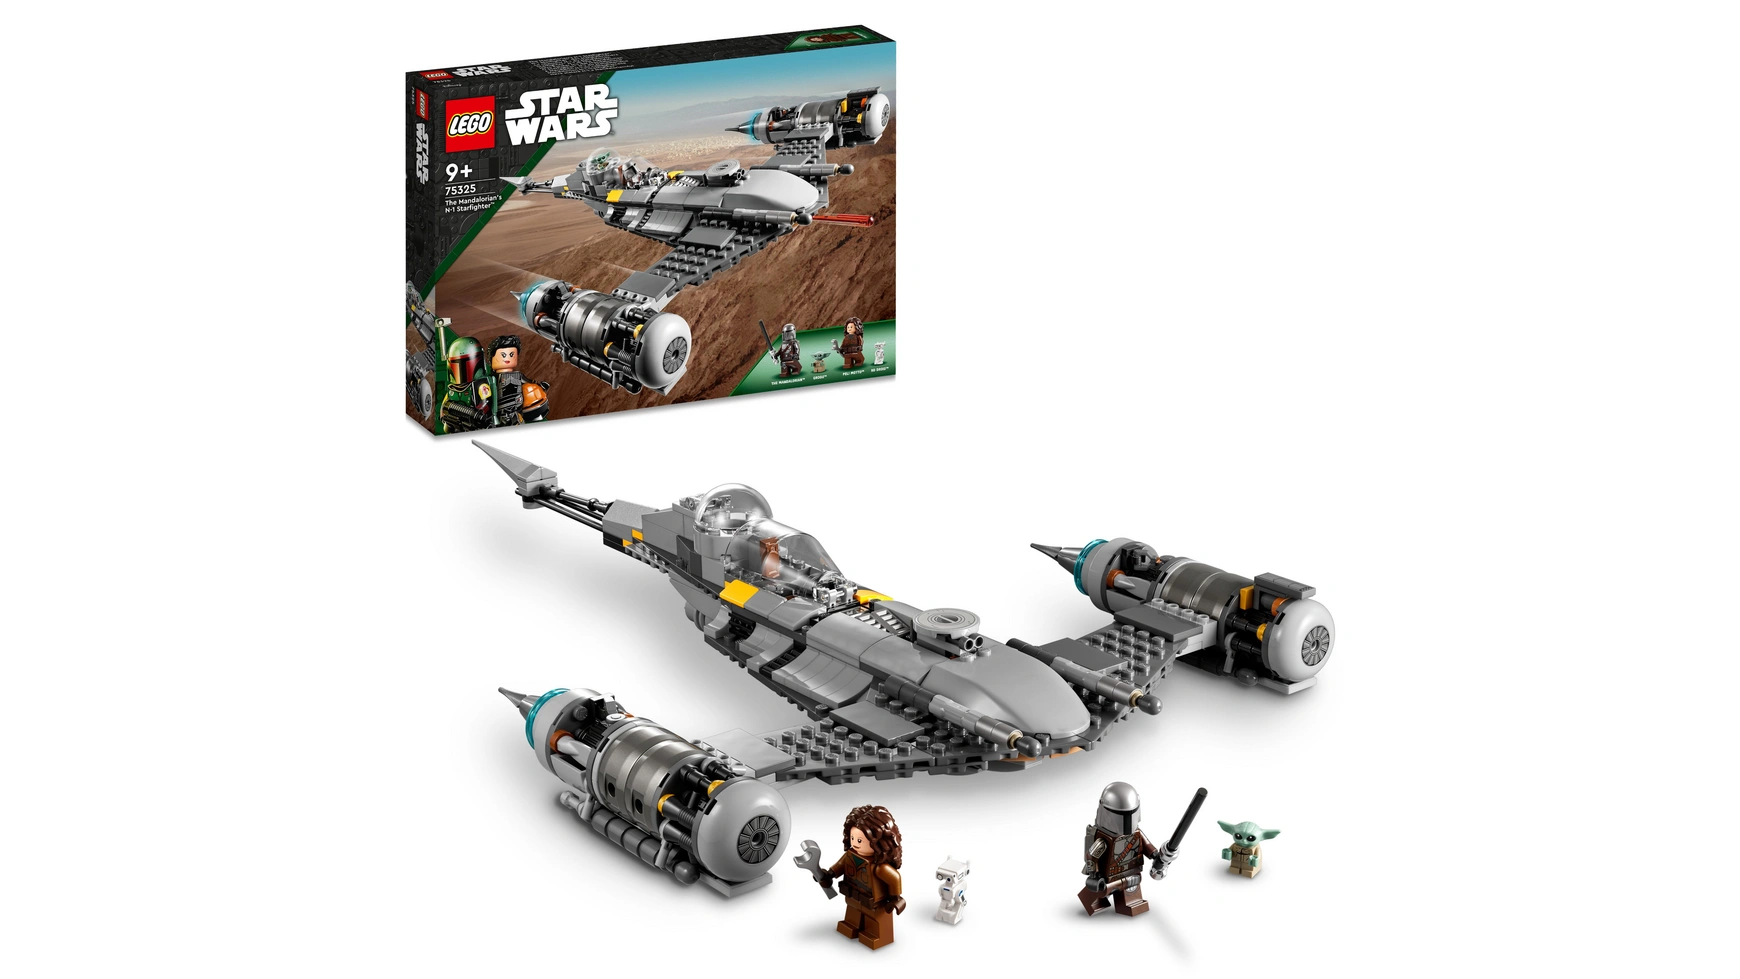 Lego Star Wars Набор Звездный истребитель Мандалорца Н-1 revell цвет электронной почты звездный истребитель n1